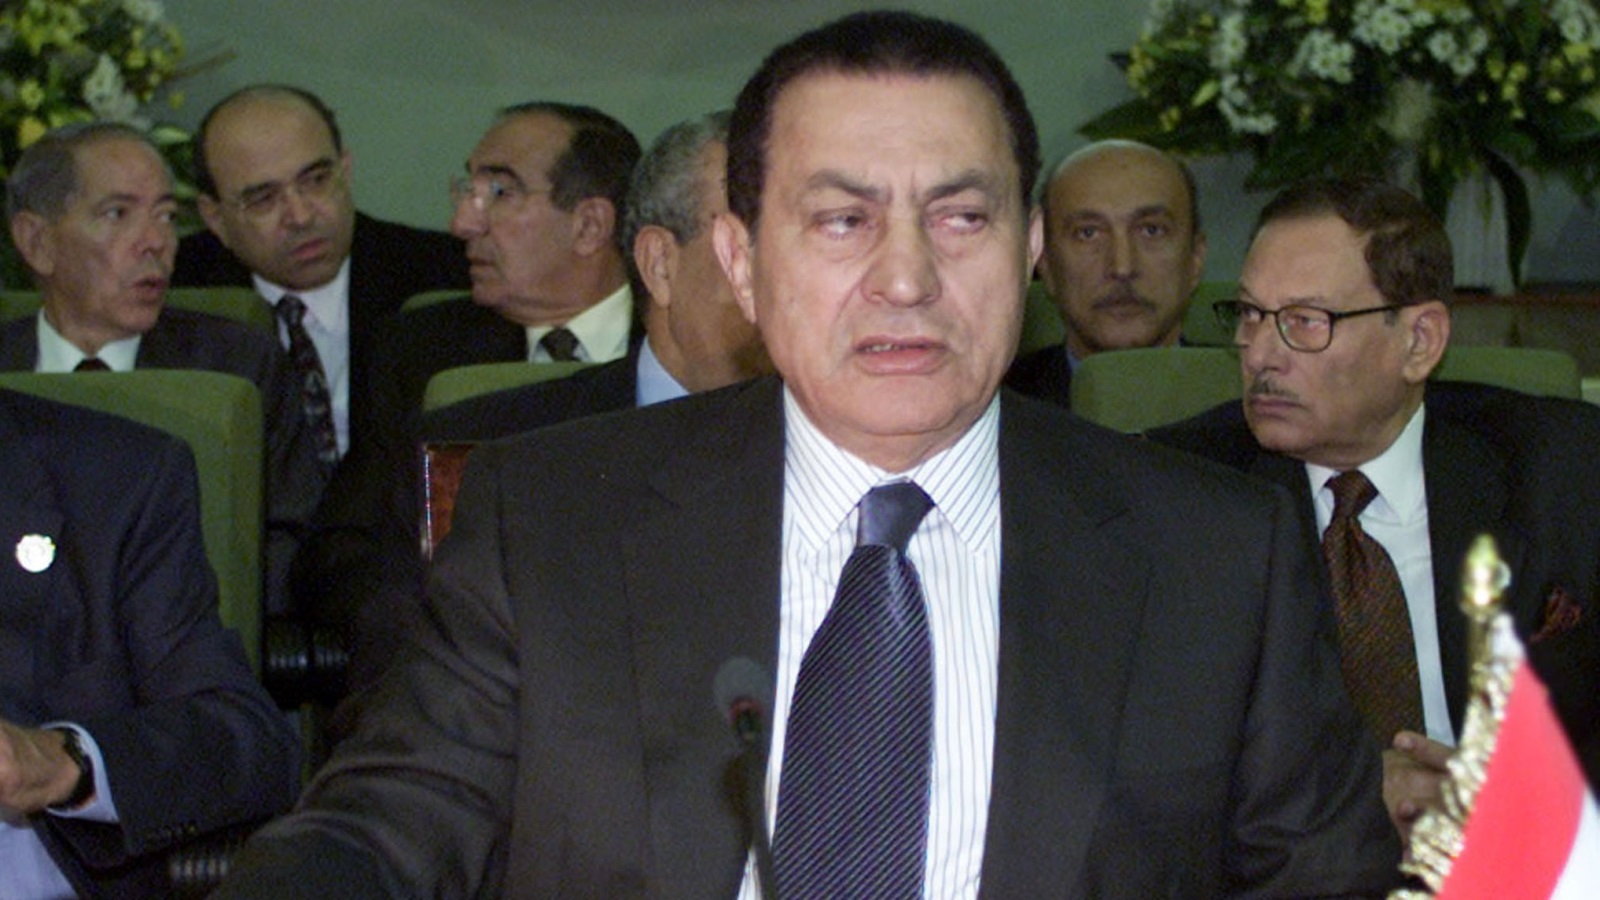 باع نظام مبارك أكثر من 400 شركة، بمبلغ إجمالي يقدر بقرابة 57 مليار جنيه